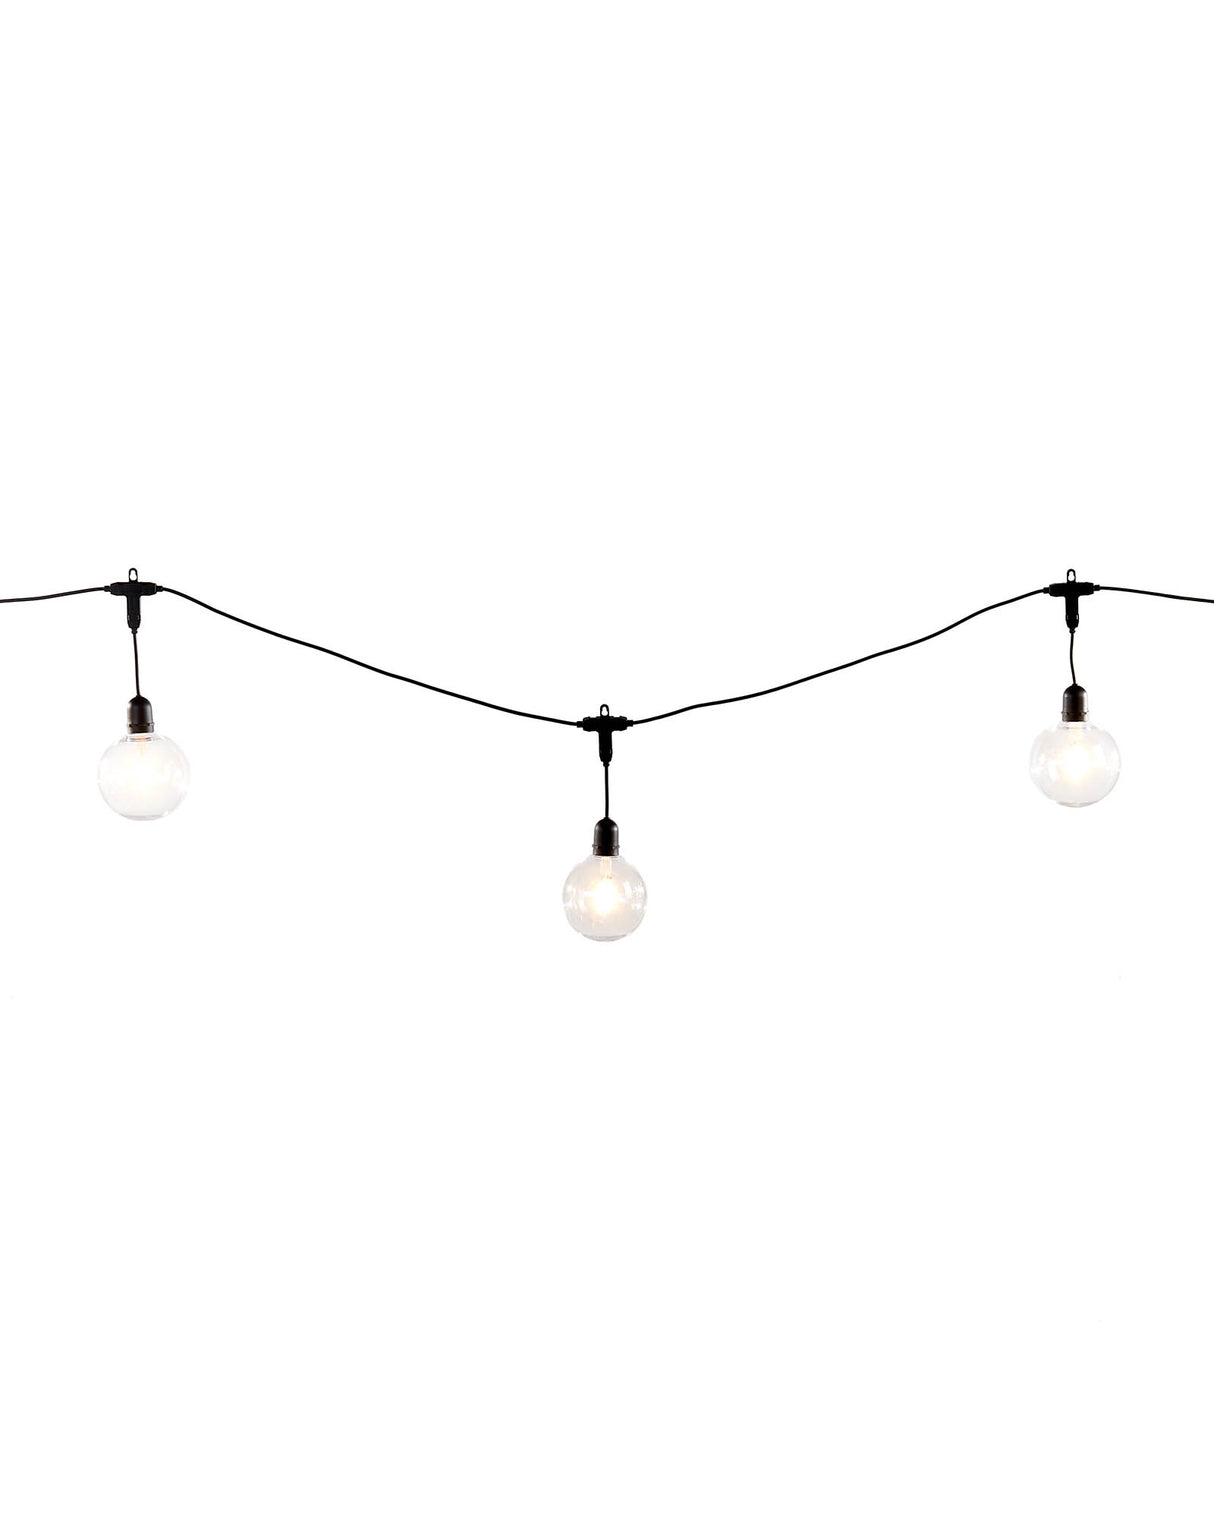 10 LED Transparent Festoon Light String, Warm White, 4.5 m